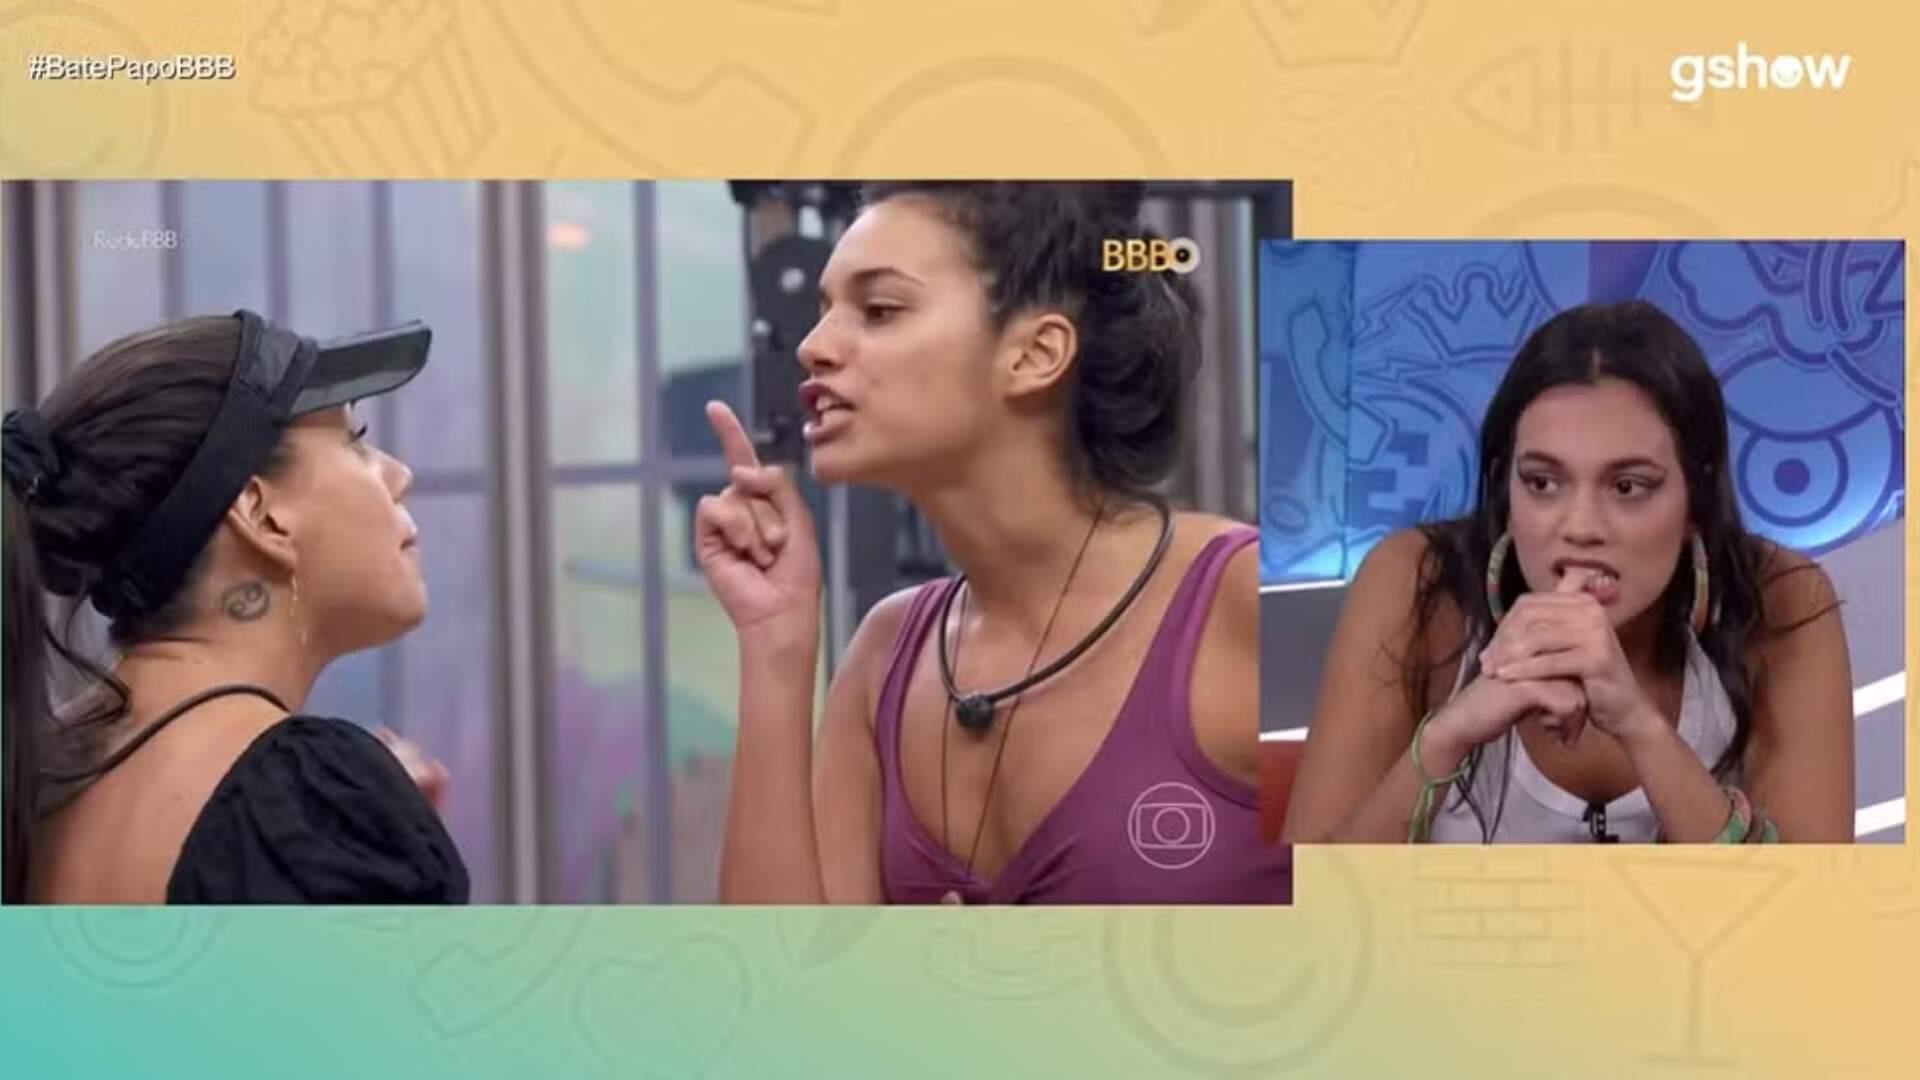 BBB 24: Alane revela que descontentamento com seu corpo motivou a discussão com Fernanda no reality show